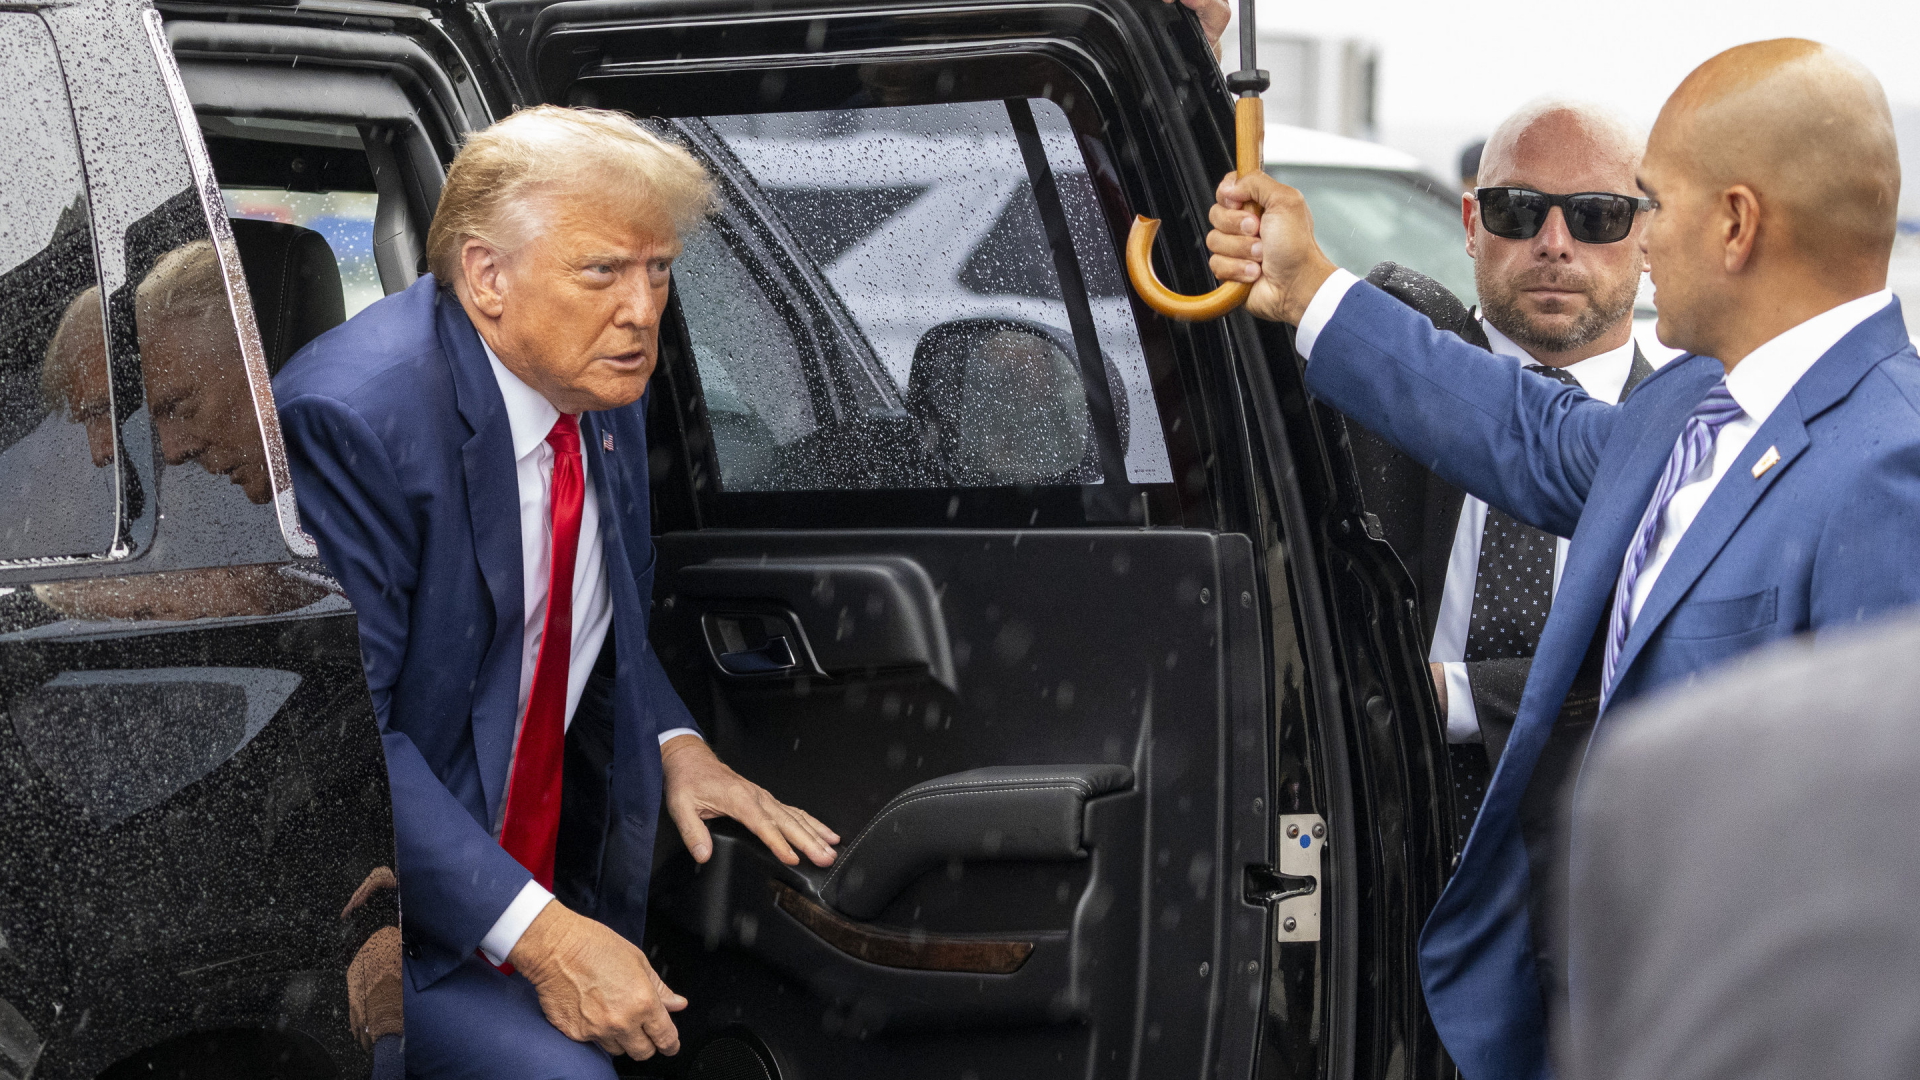 Donald Trump steigt aus dem Auto.